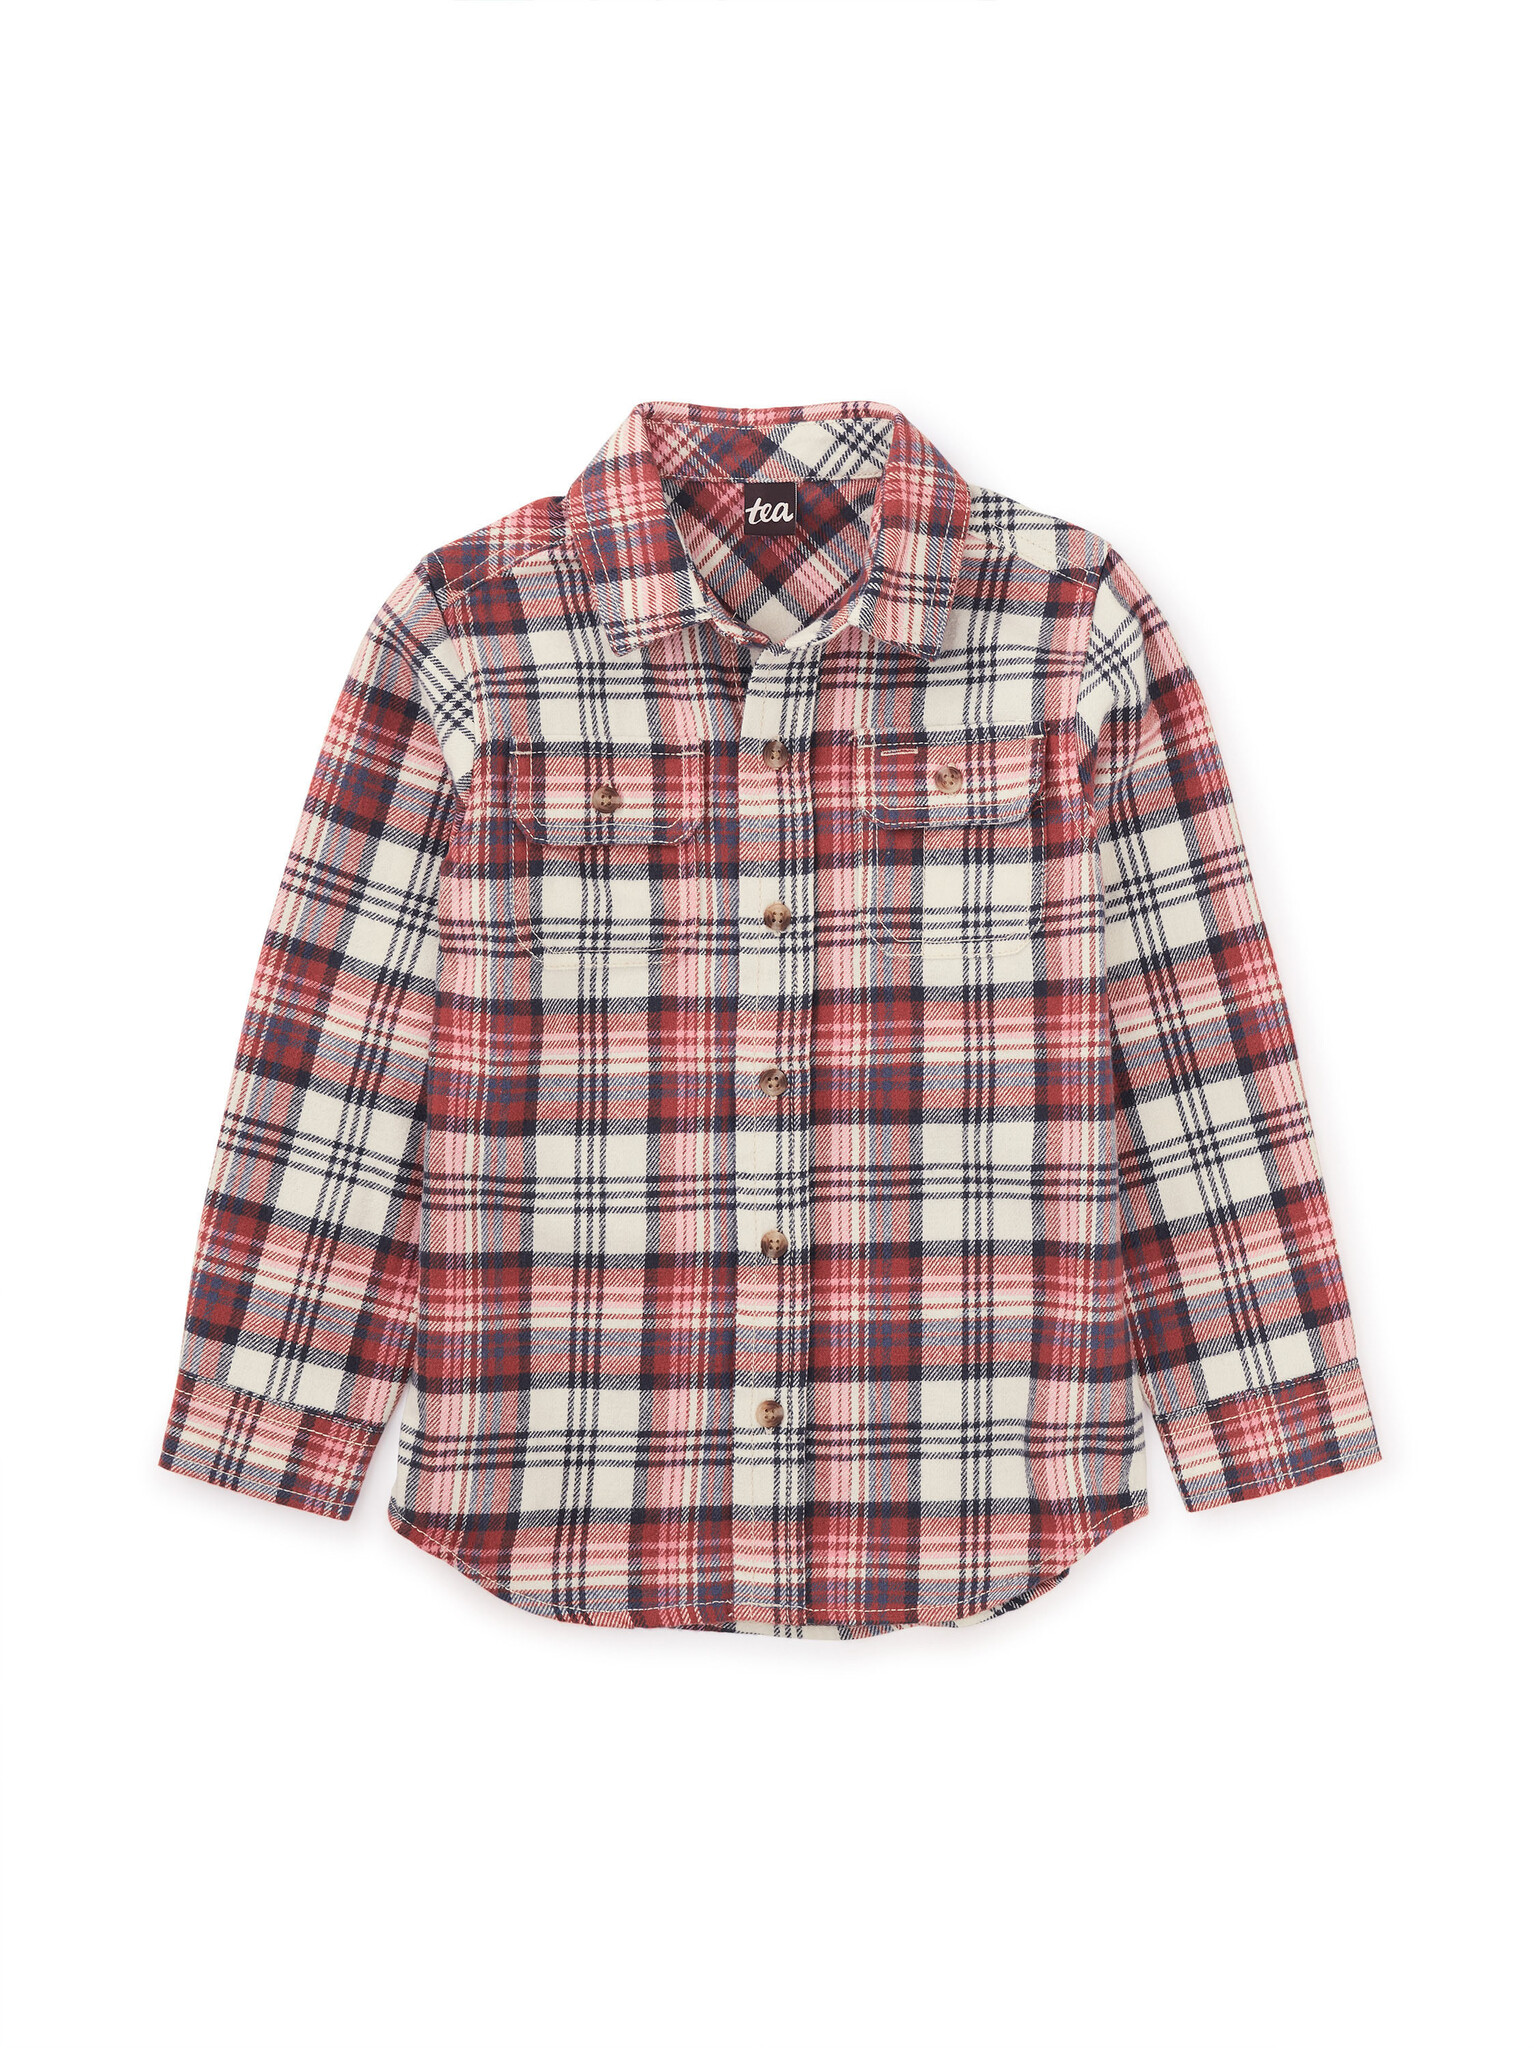 Tea Collection Flannel Button Shirt - Bon  Plaid